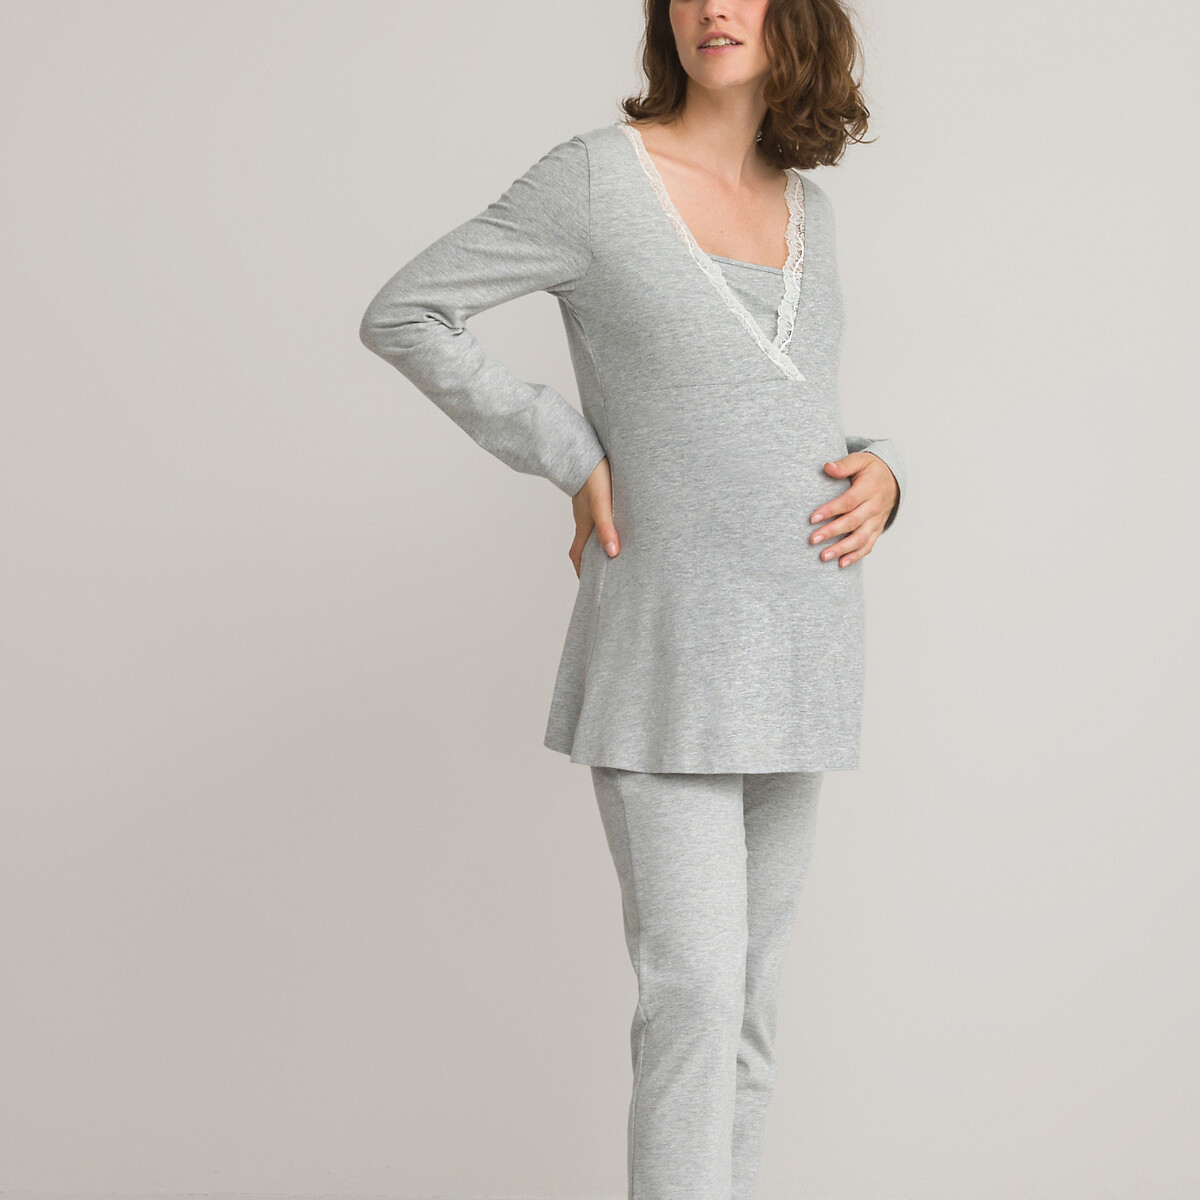 Pyjama femme enceinte nouveau model - Le monde de pyjama